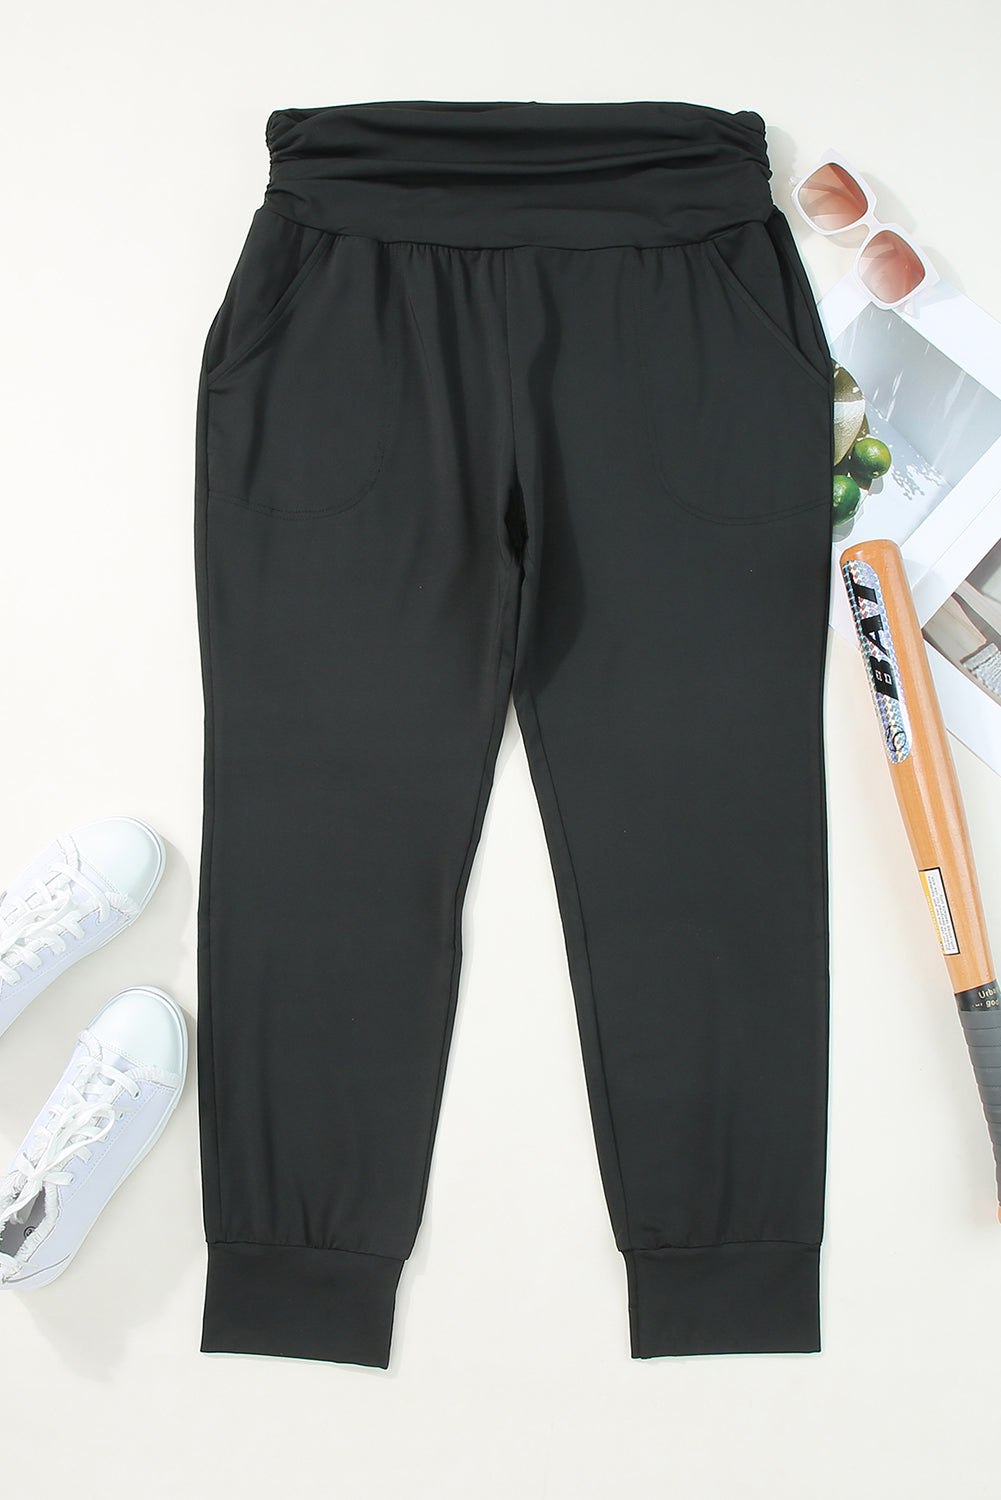 Črne ozke hlače z žepi in visokim pasom velike velikosti